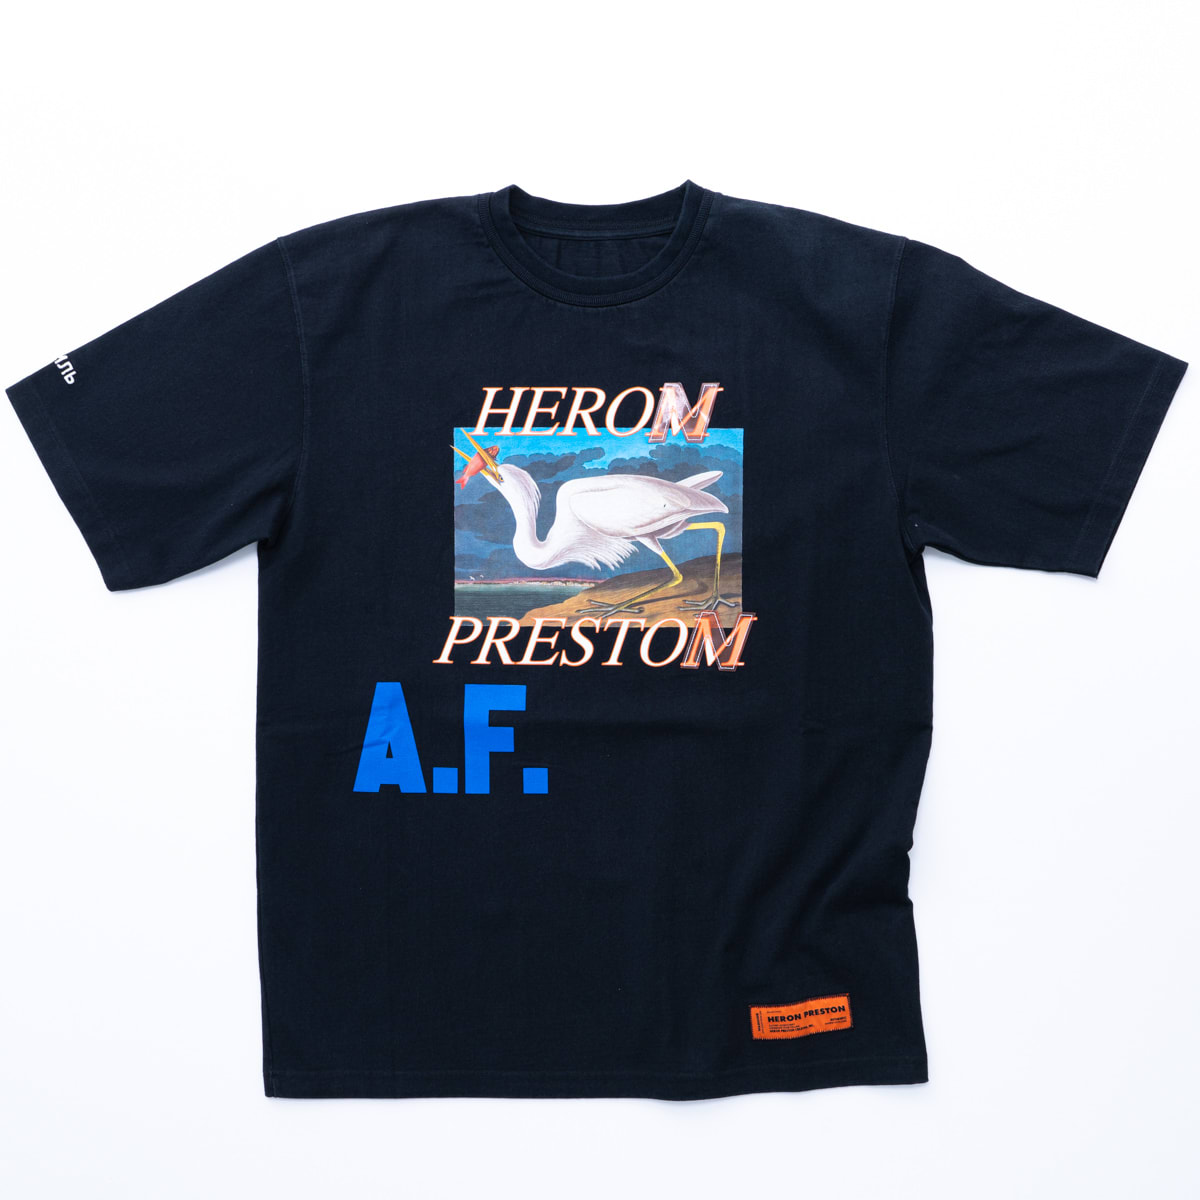 Heron Preston T-shirt Heron Preston